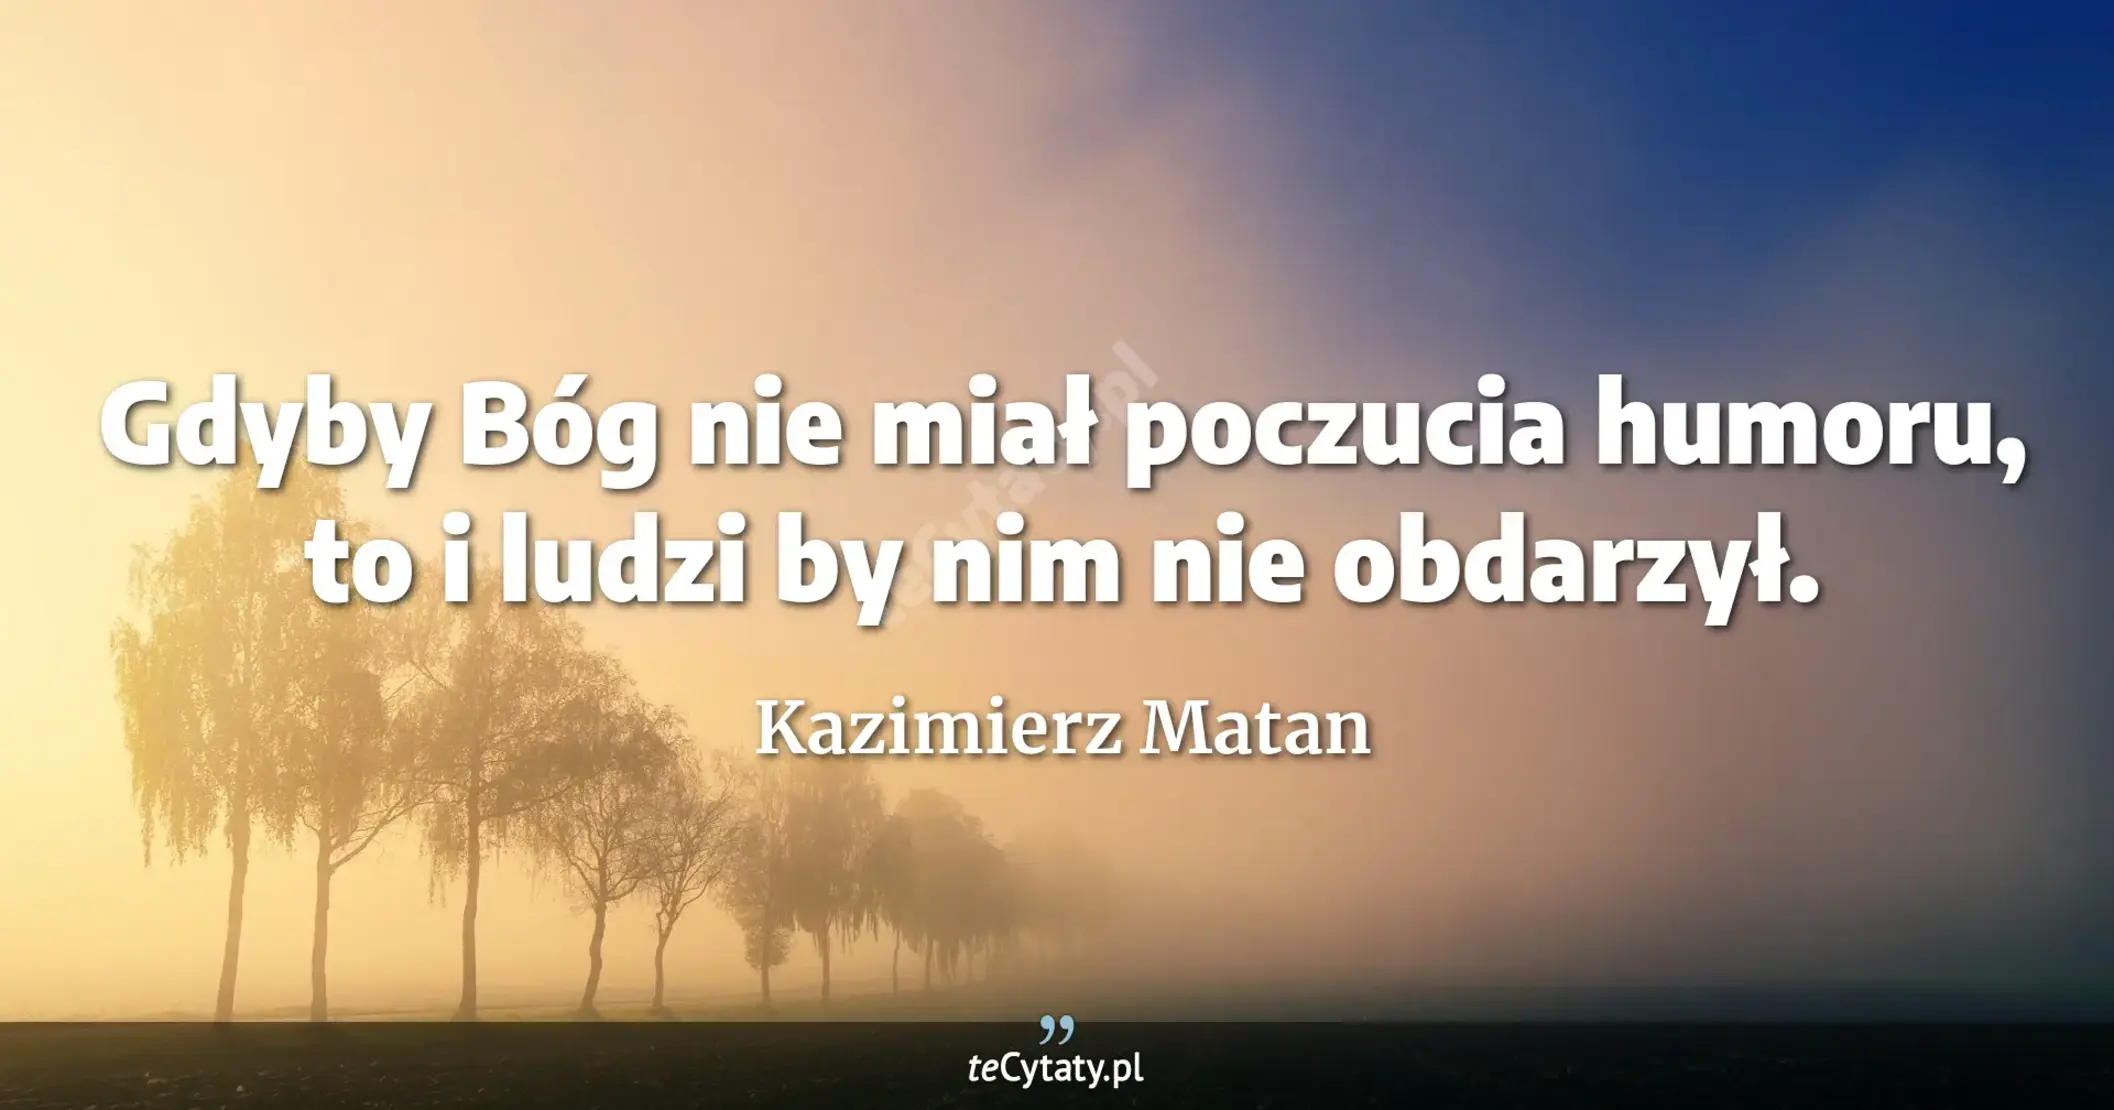 Gdyby Bóg nie miał poczucia humoru, to i ludzi by nim nie obdarzył. - Kazimierz Matan